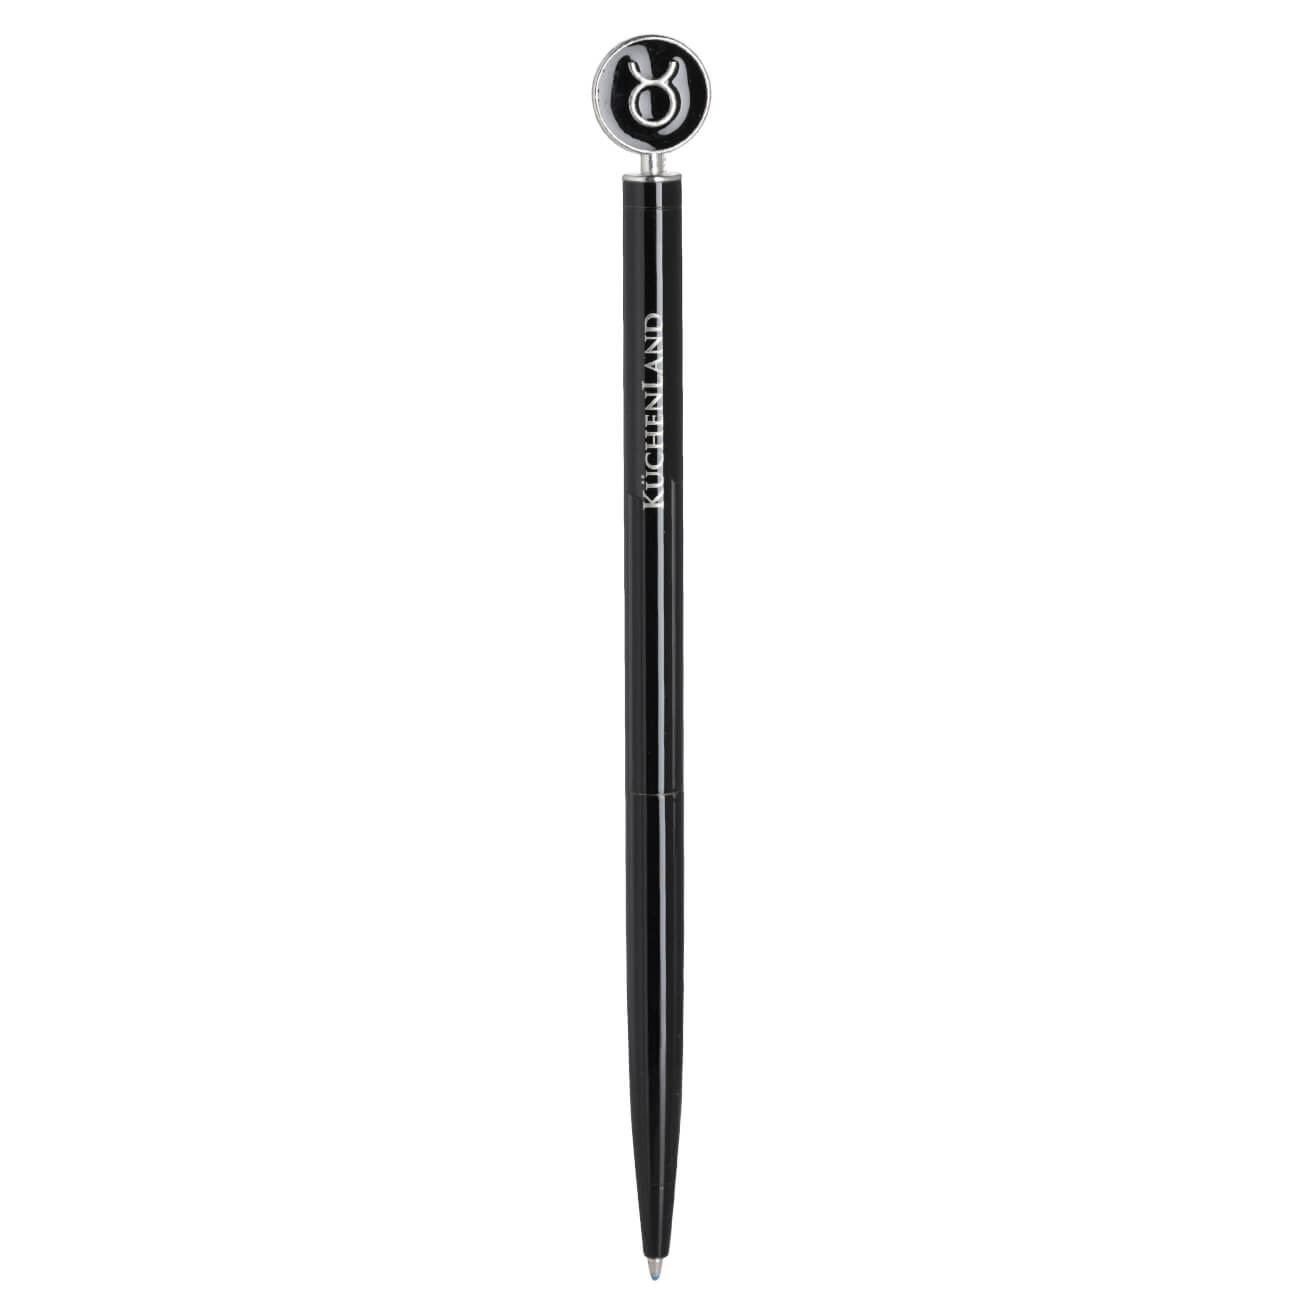 Ручка шариковая, 15 см, с фигуркой, сталь, черно-серебристая, Телец, Zodiac classic ручка шариковая